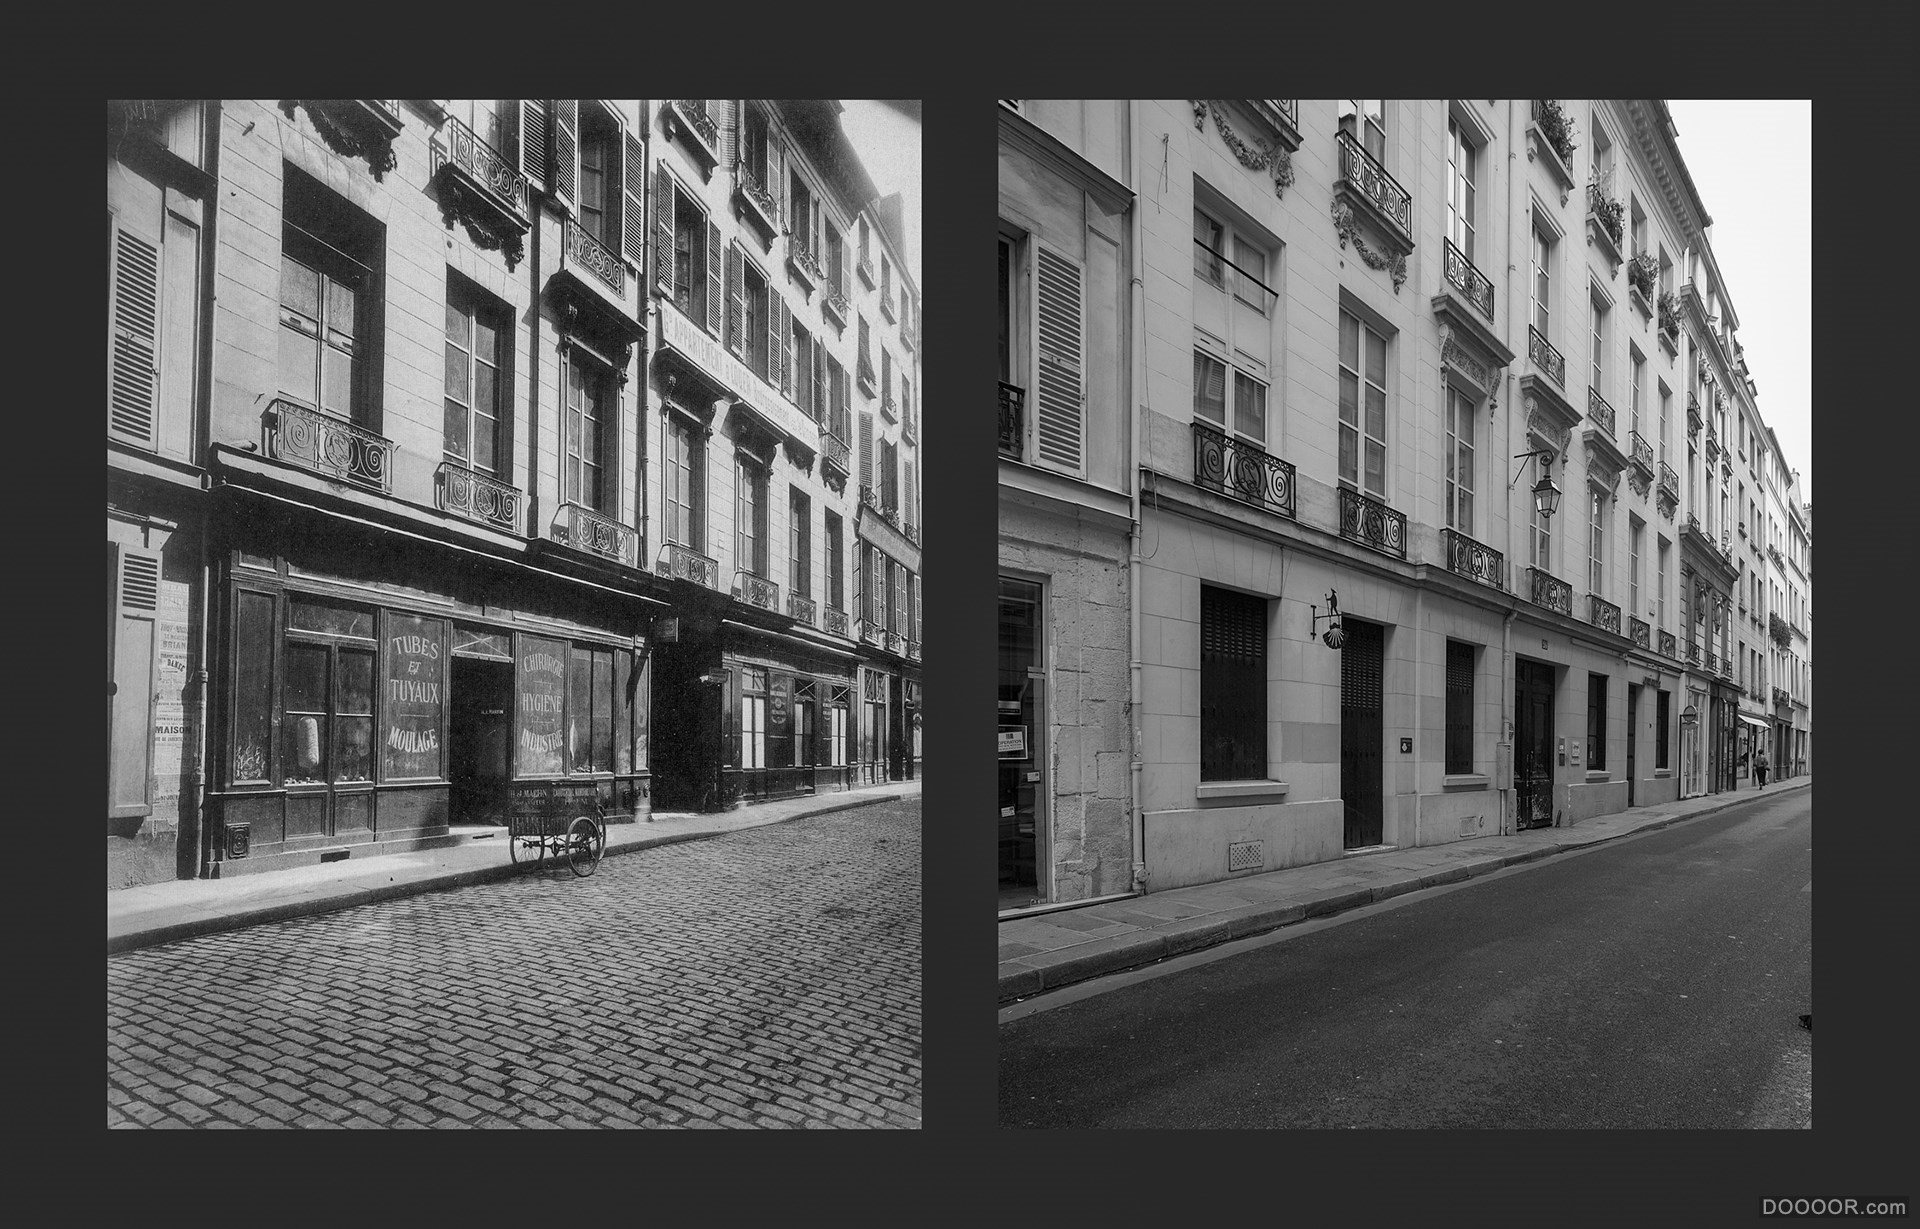 过去与现在-巴黎街头照片对比 [50P] (31).jpg